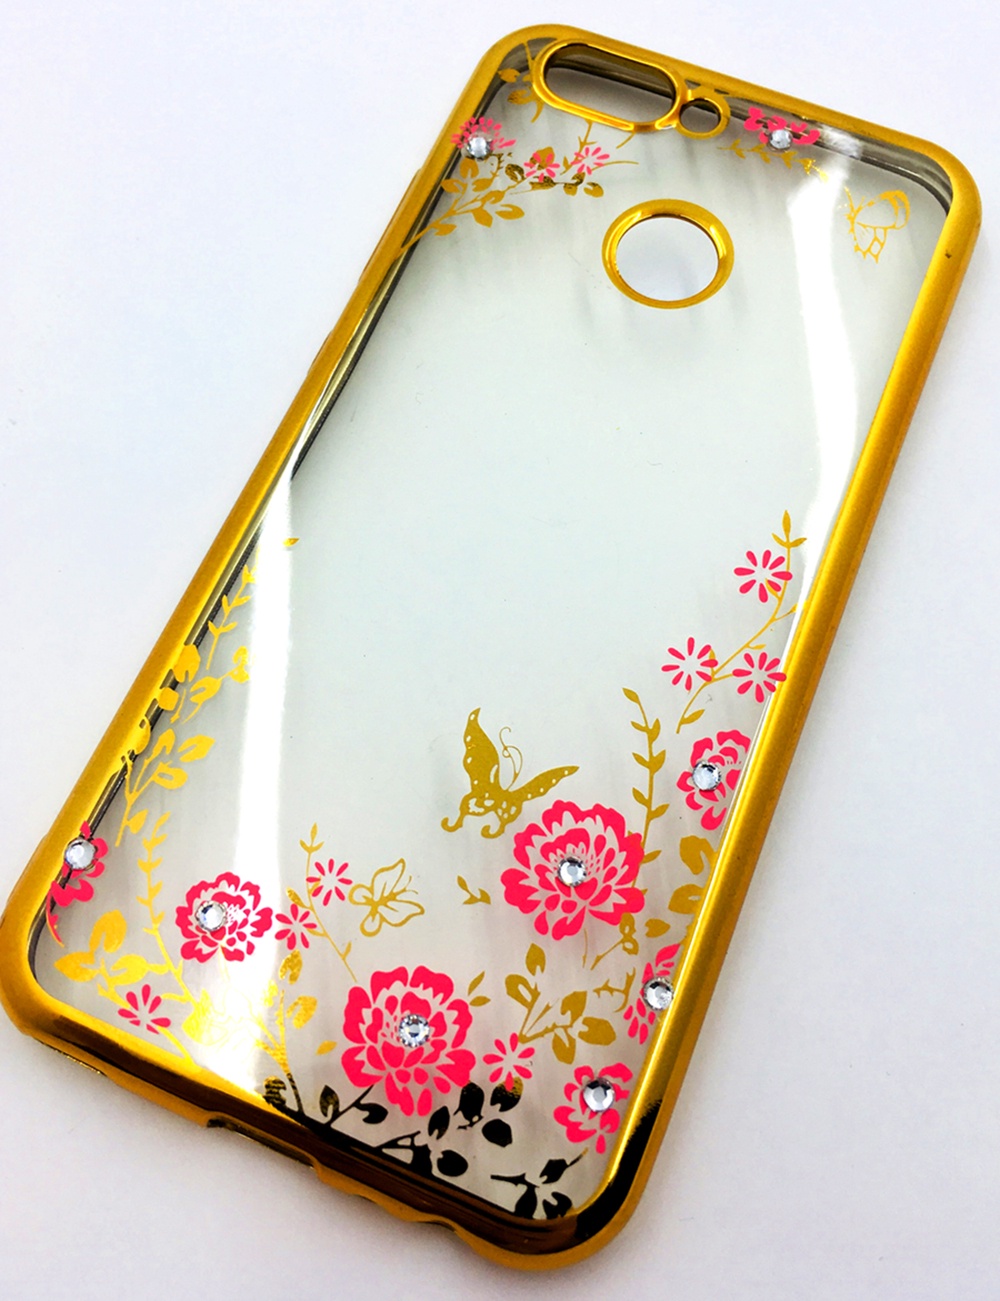 Чехол для сотового телефона Мобильная мода Huawei Nova 2 Силиконовая, прозрачная накладка со стразами, 6986R, золотой